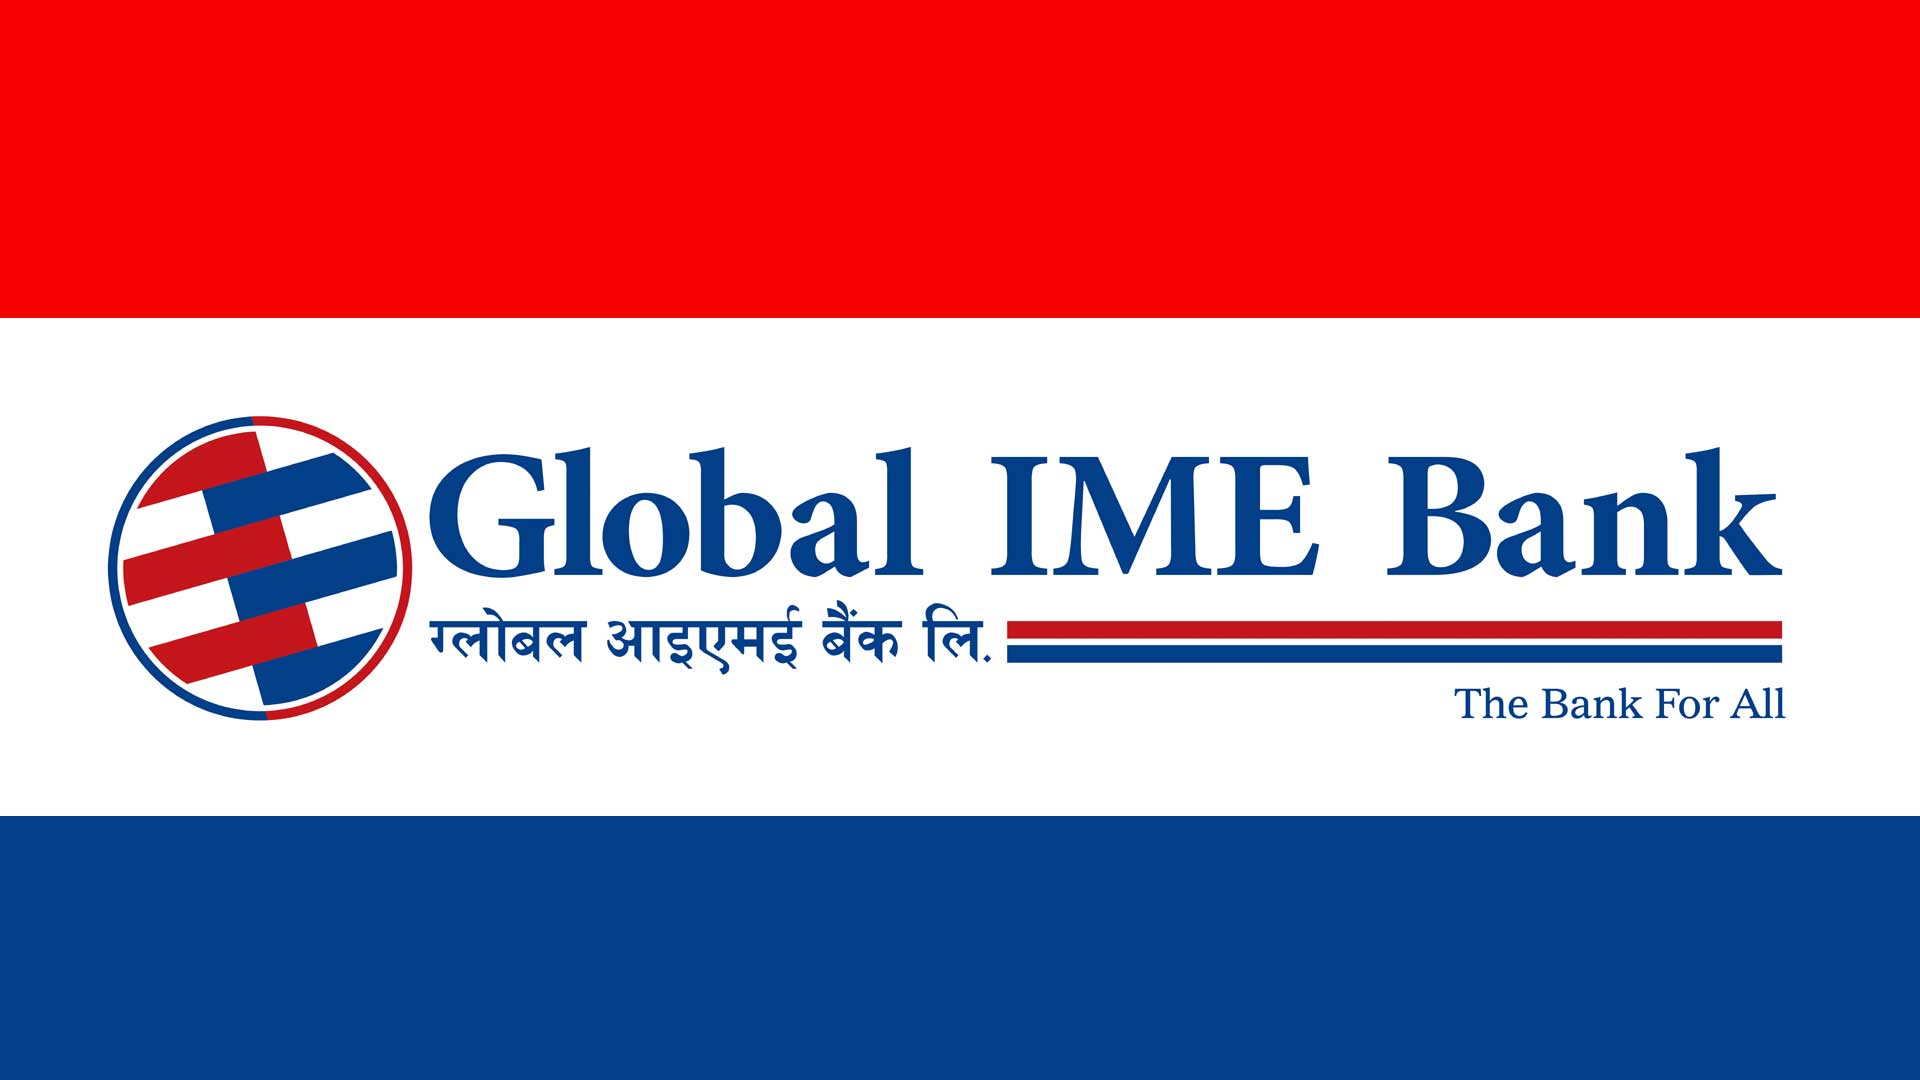 ग्लोबल आइएमई बैंकले हज यात्रीहरुलाई विदेशी मुद्रा सटहीको सुविधा प्रदान गर्ने